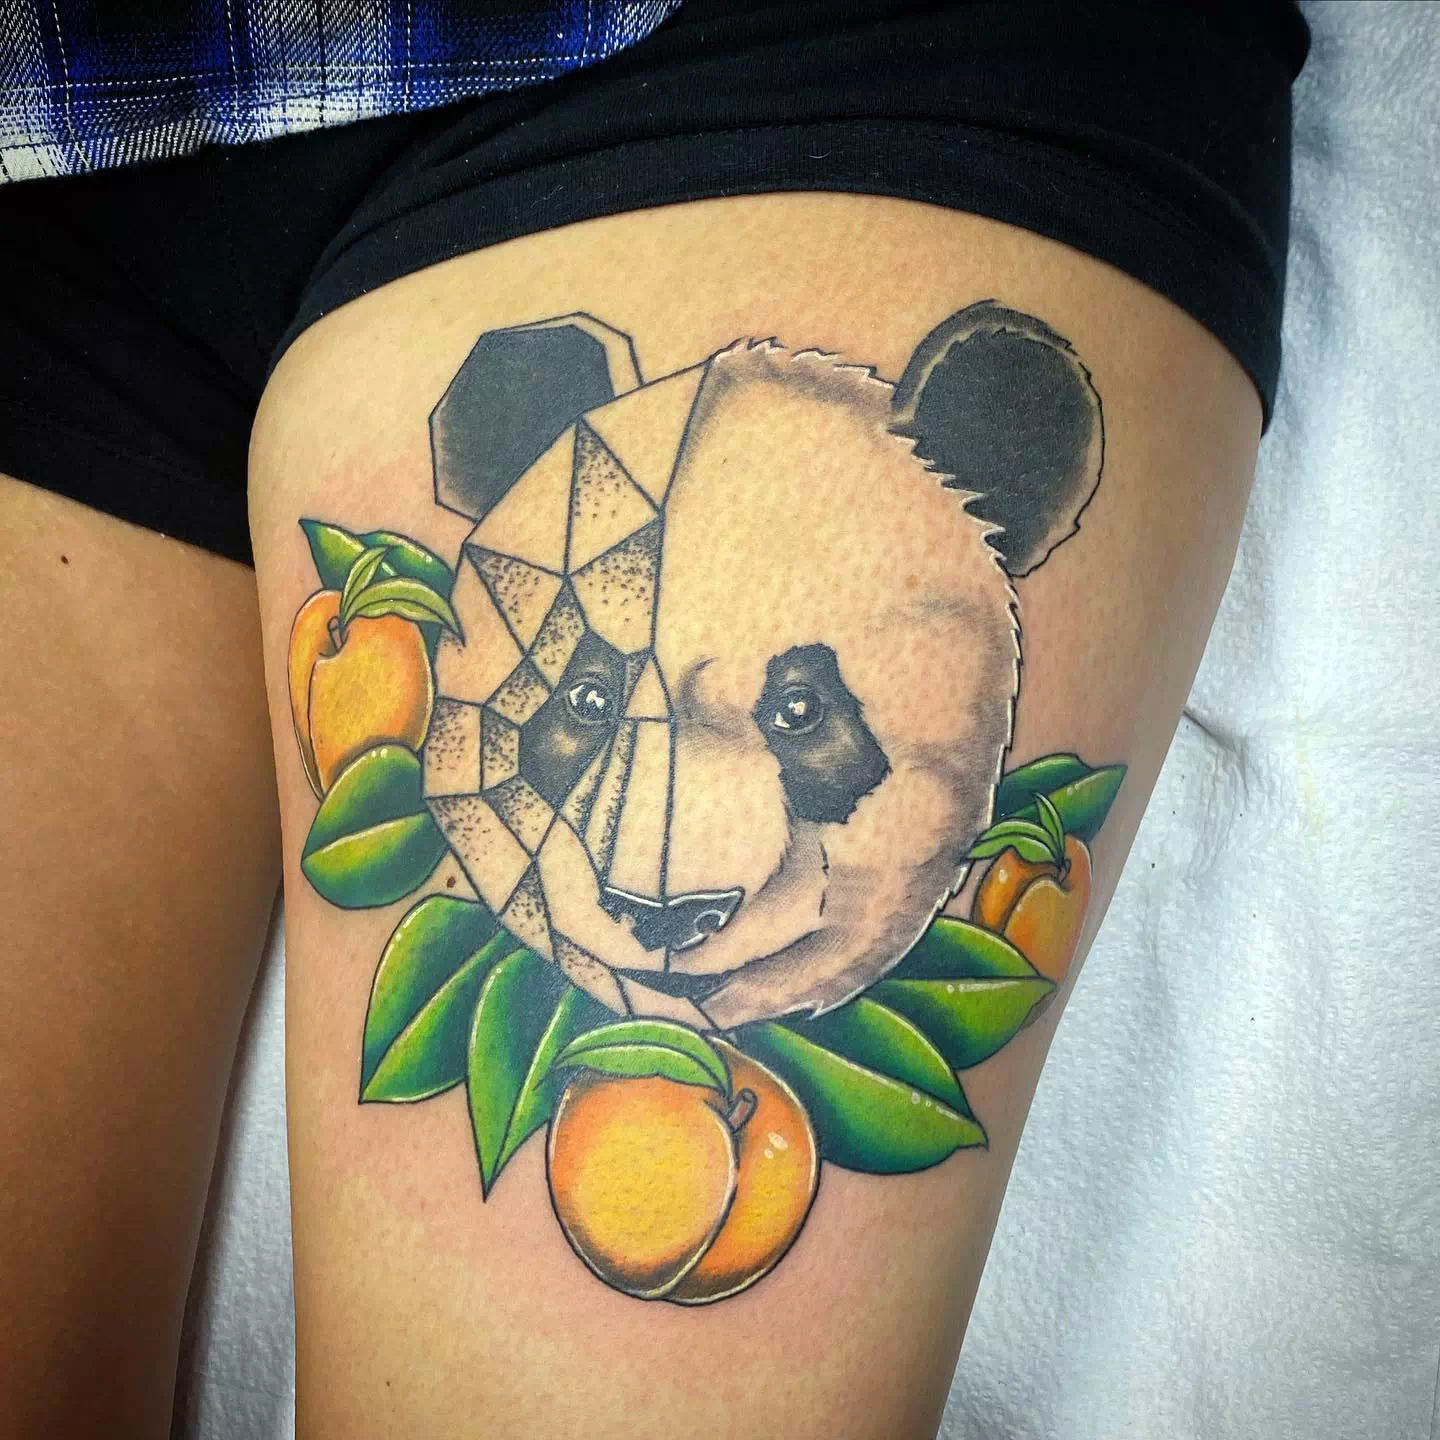 Panda tattoo ideas 1